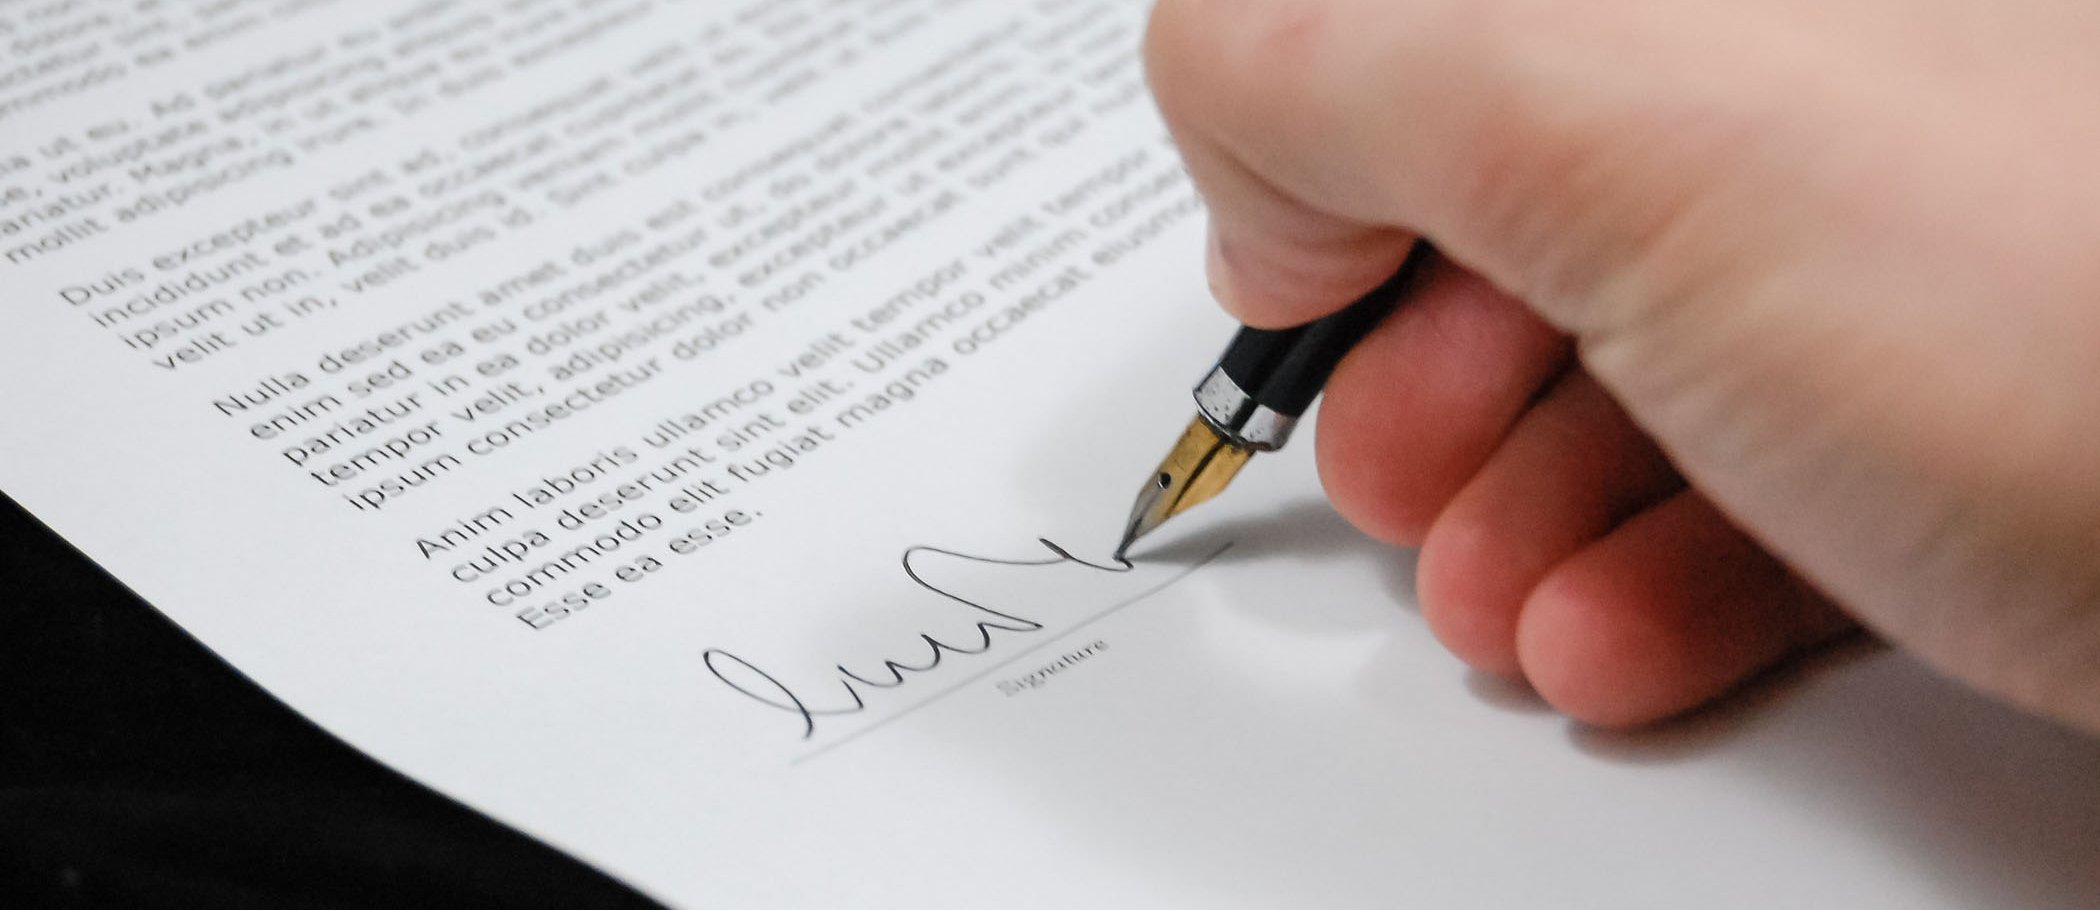 Una persona signant un document amb una ploma estilogràfica